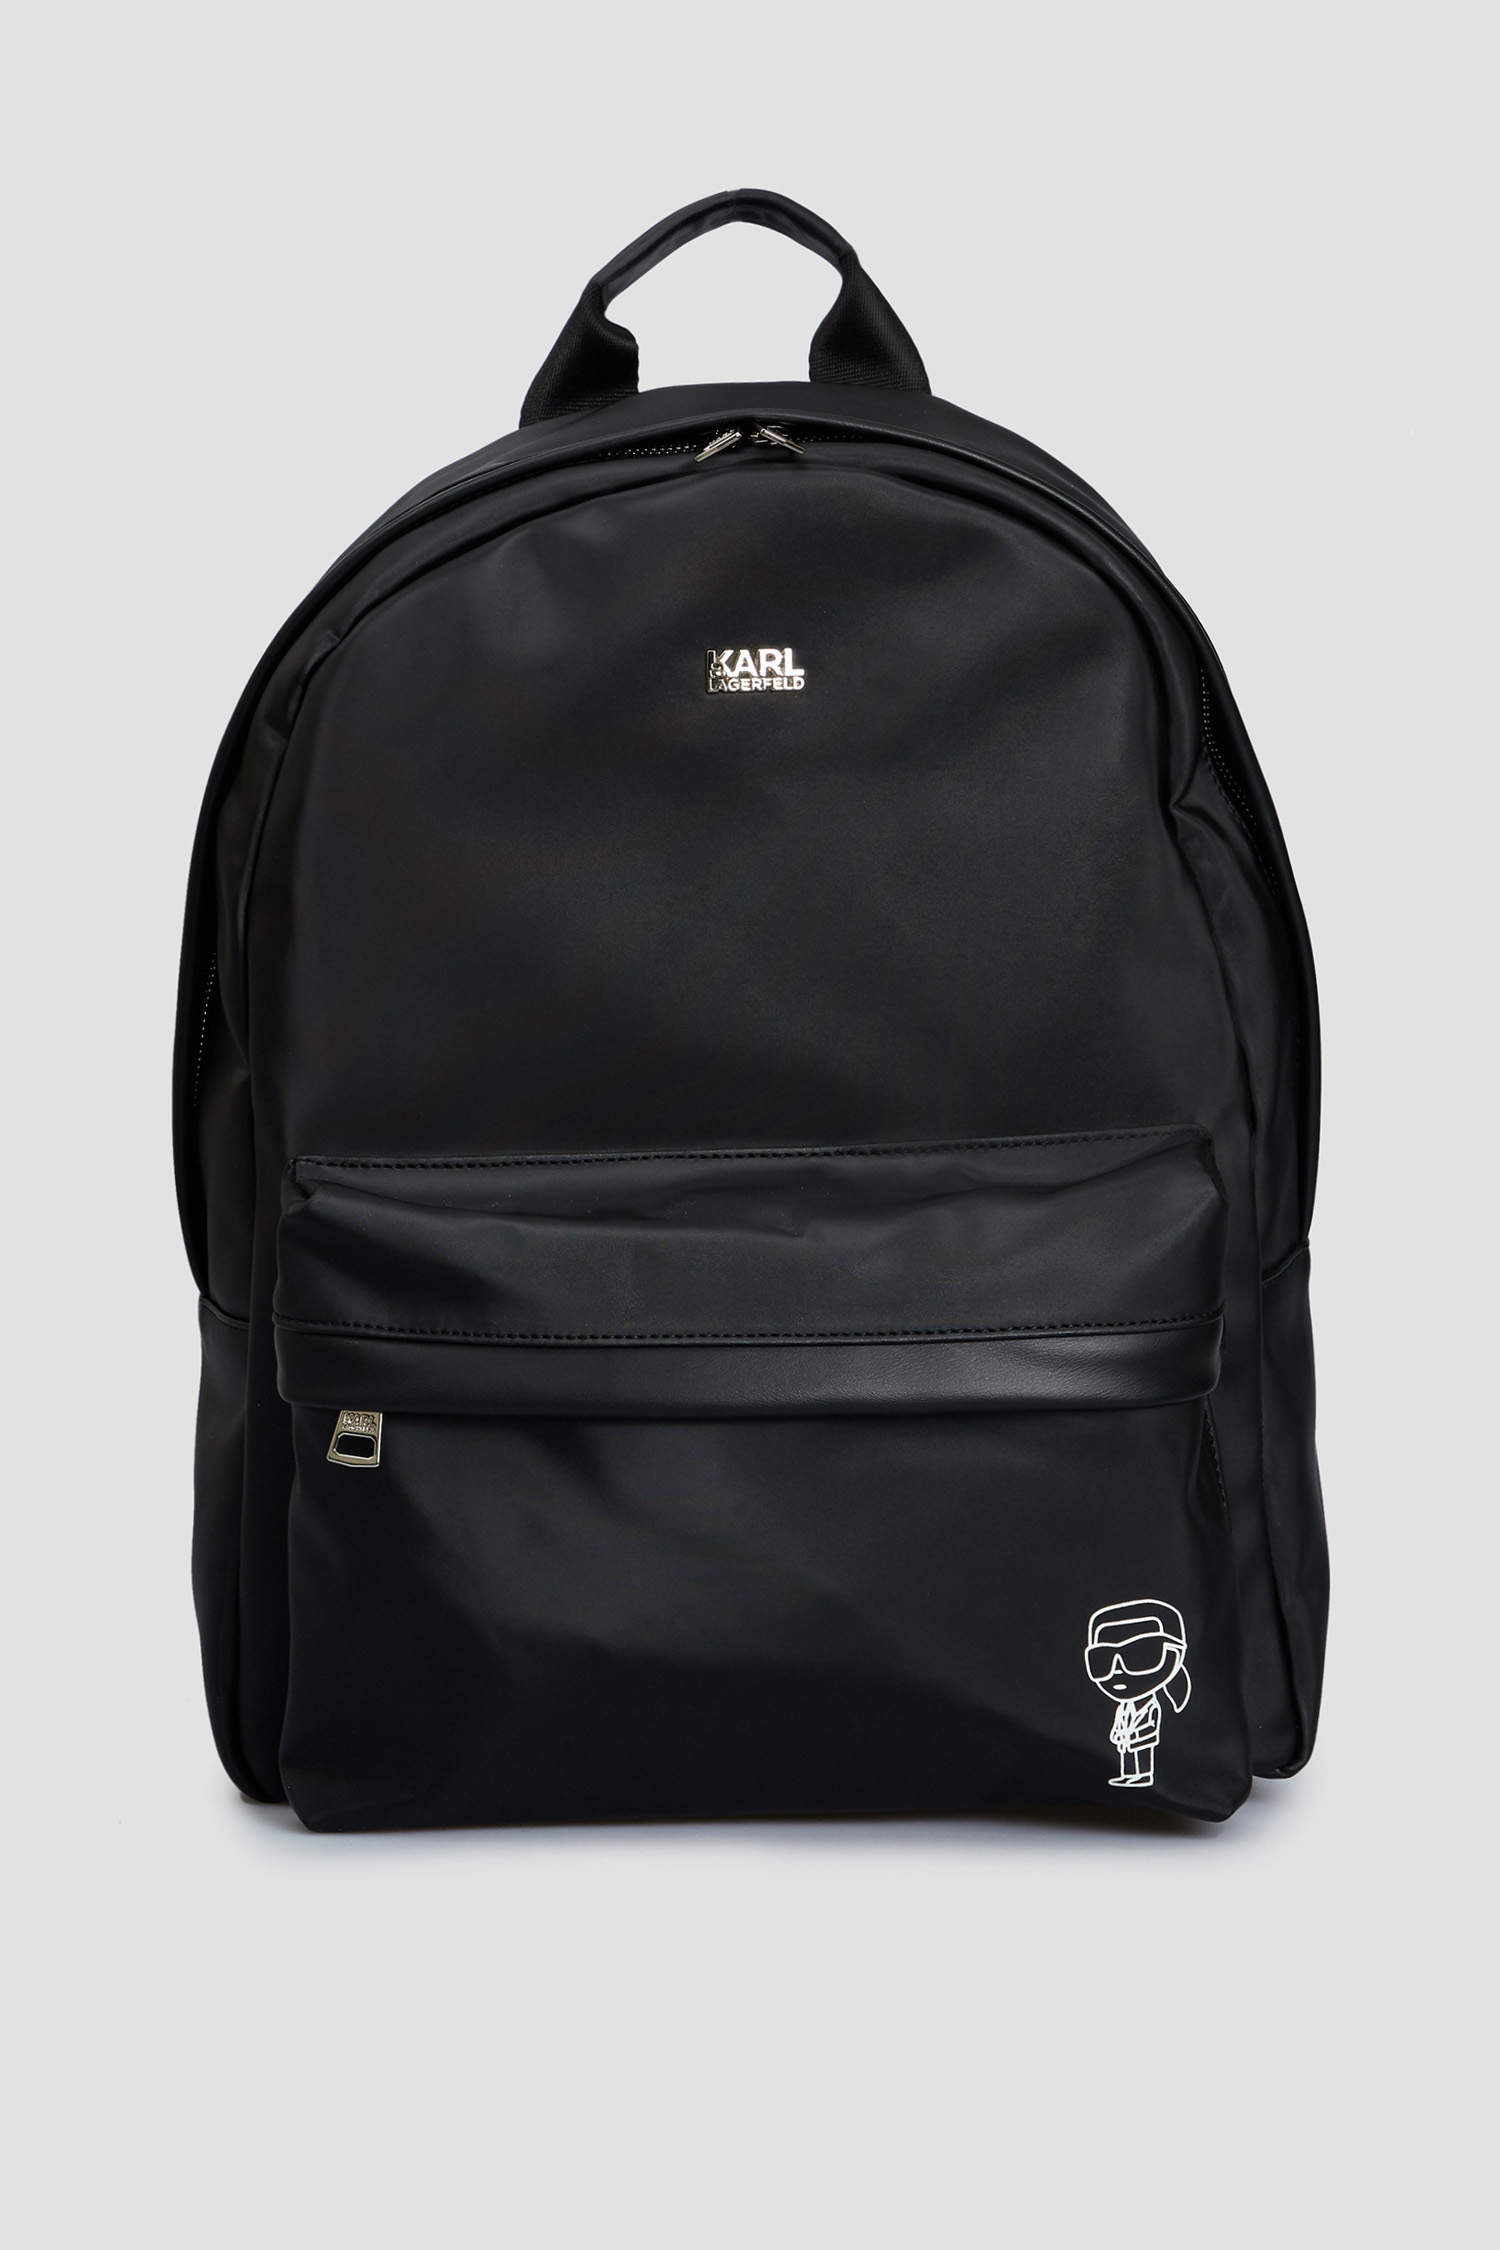 Мужской черный рюкзак Karl Lagerfeld 534113.805901;990